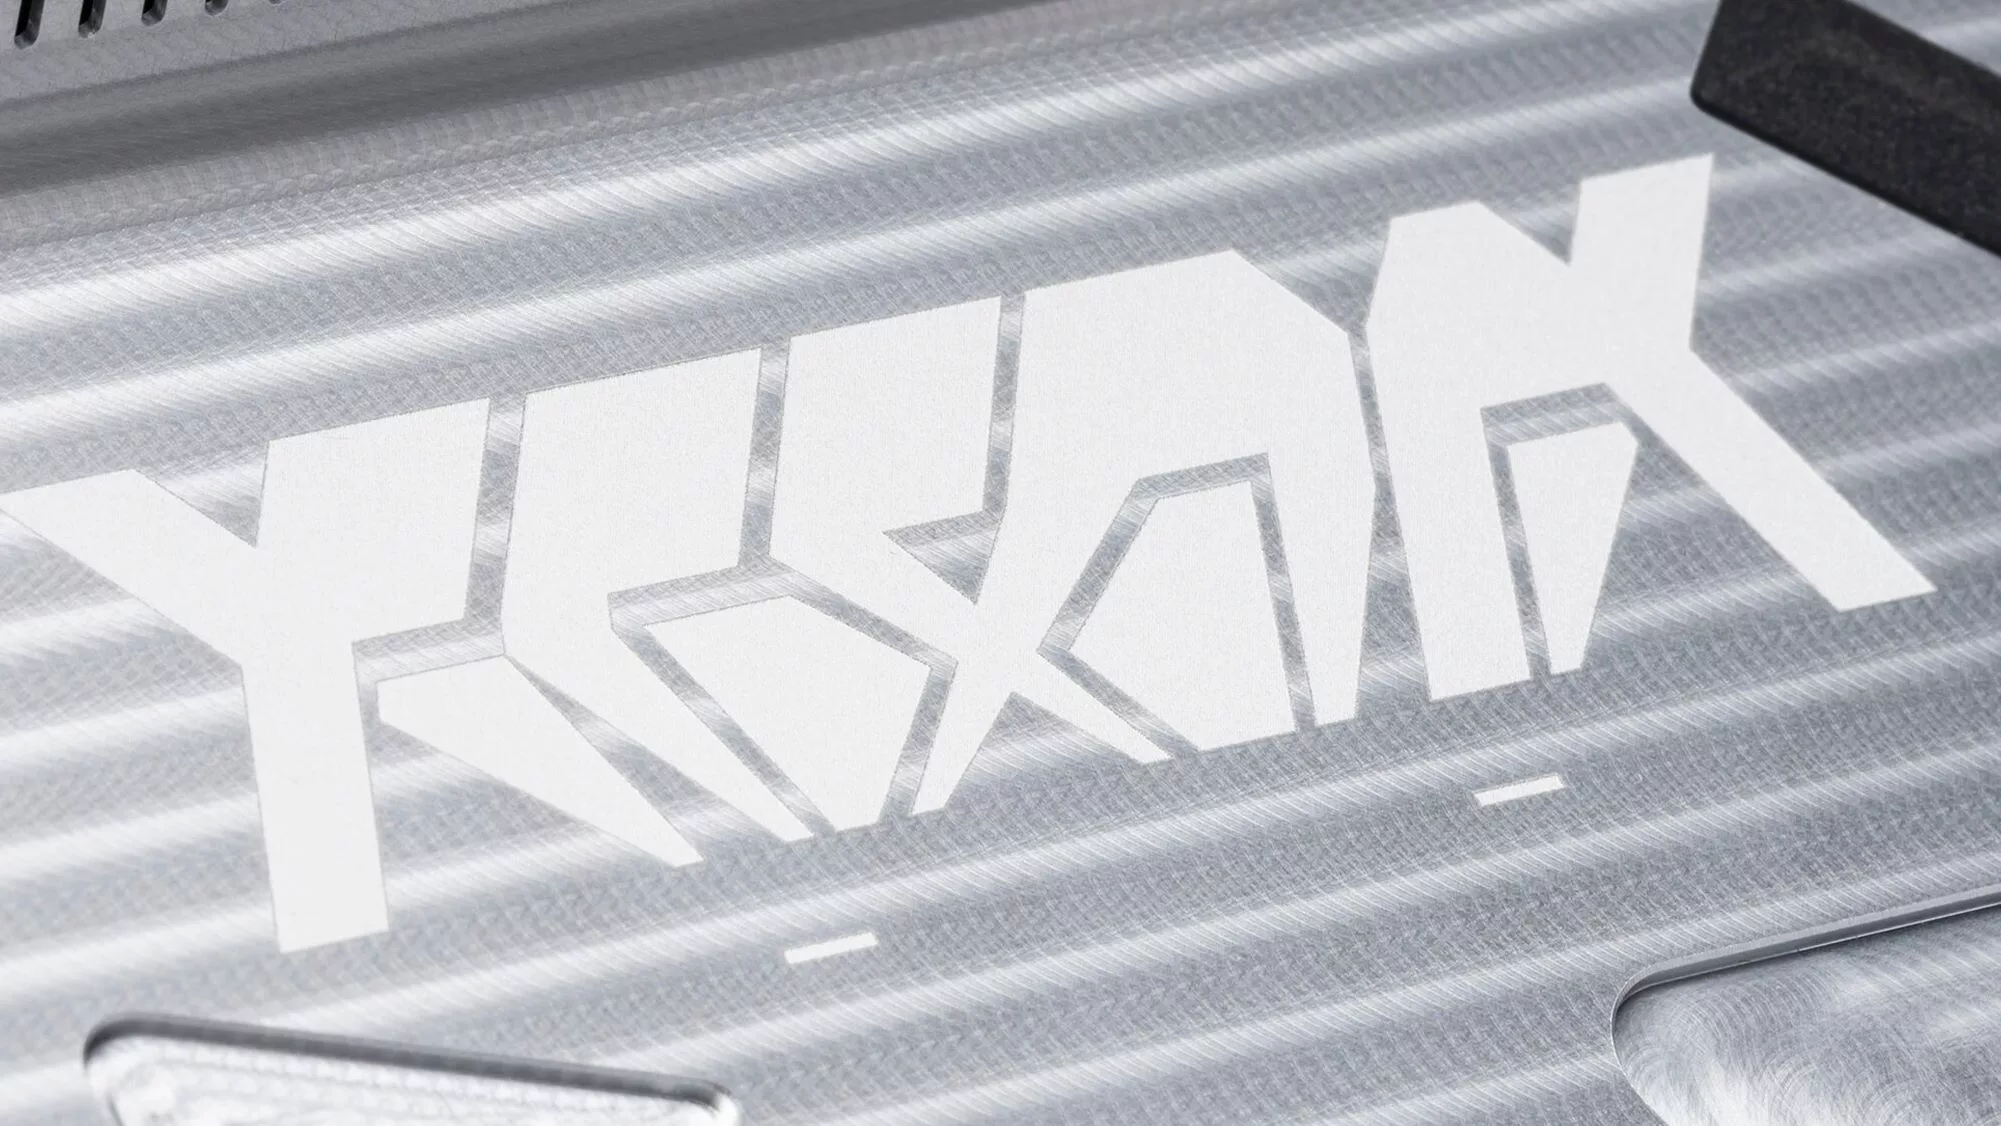 Extreme close up of stylised ACRONYM logo on rear of RMT02